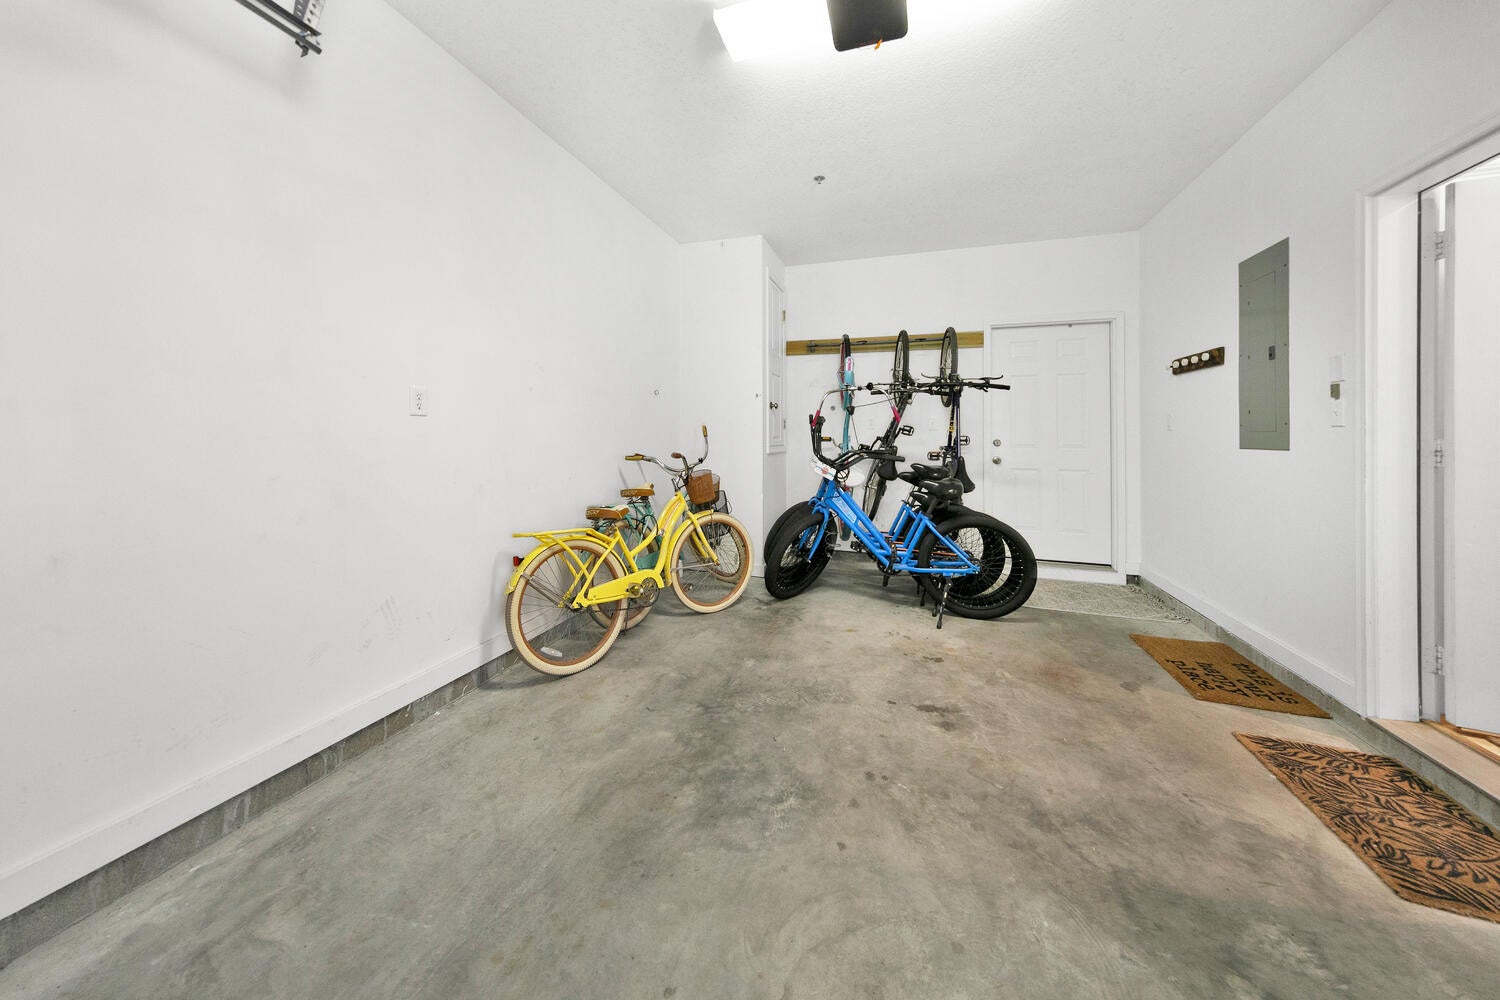 Bikes in the garage